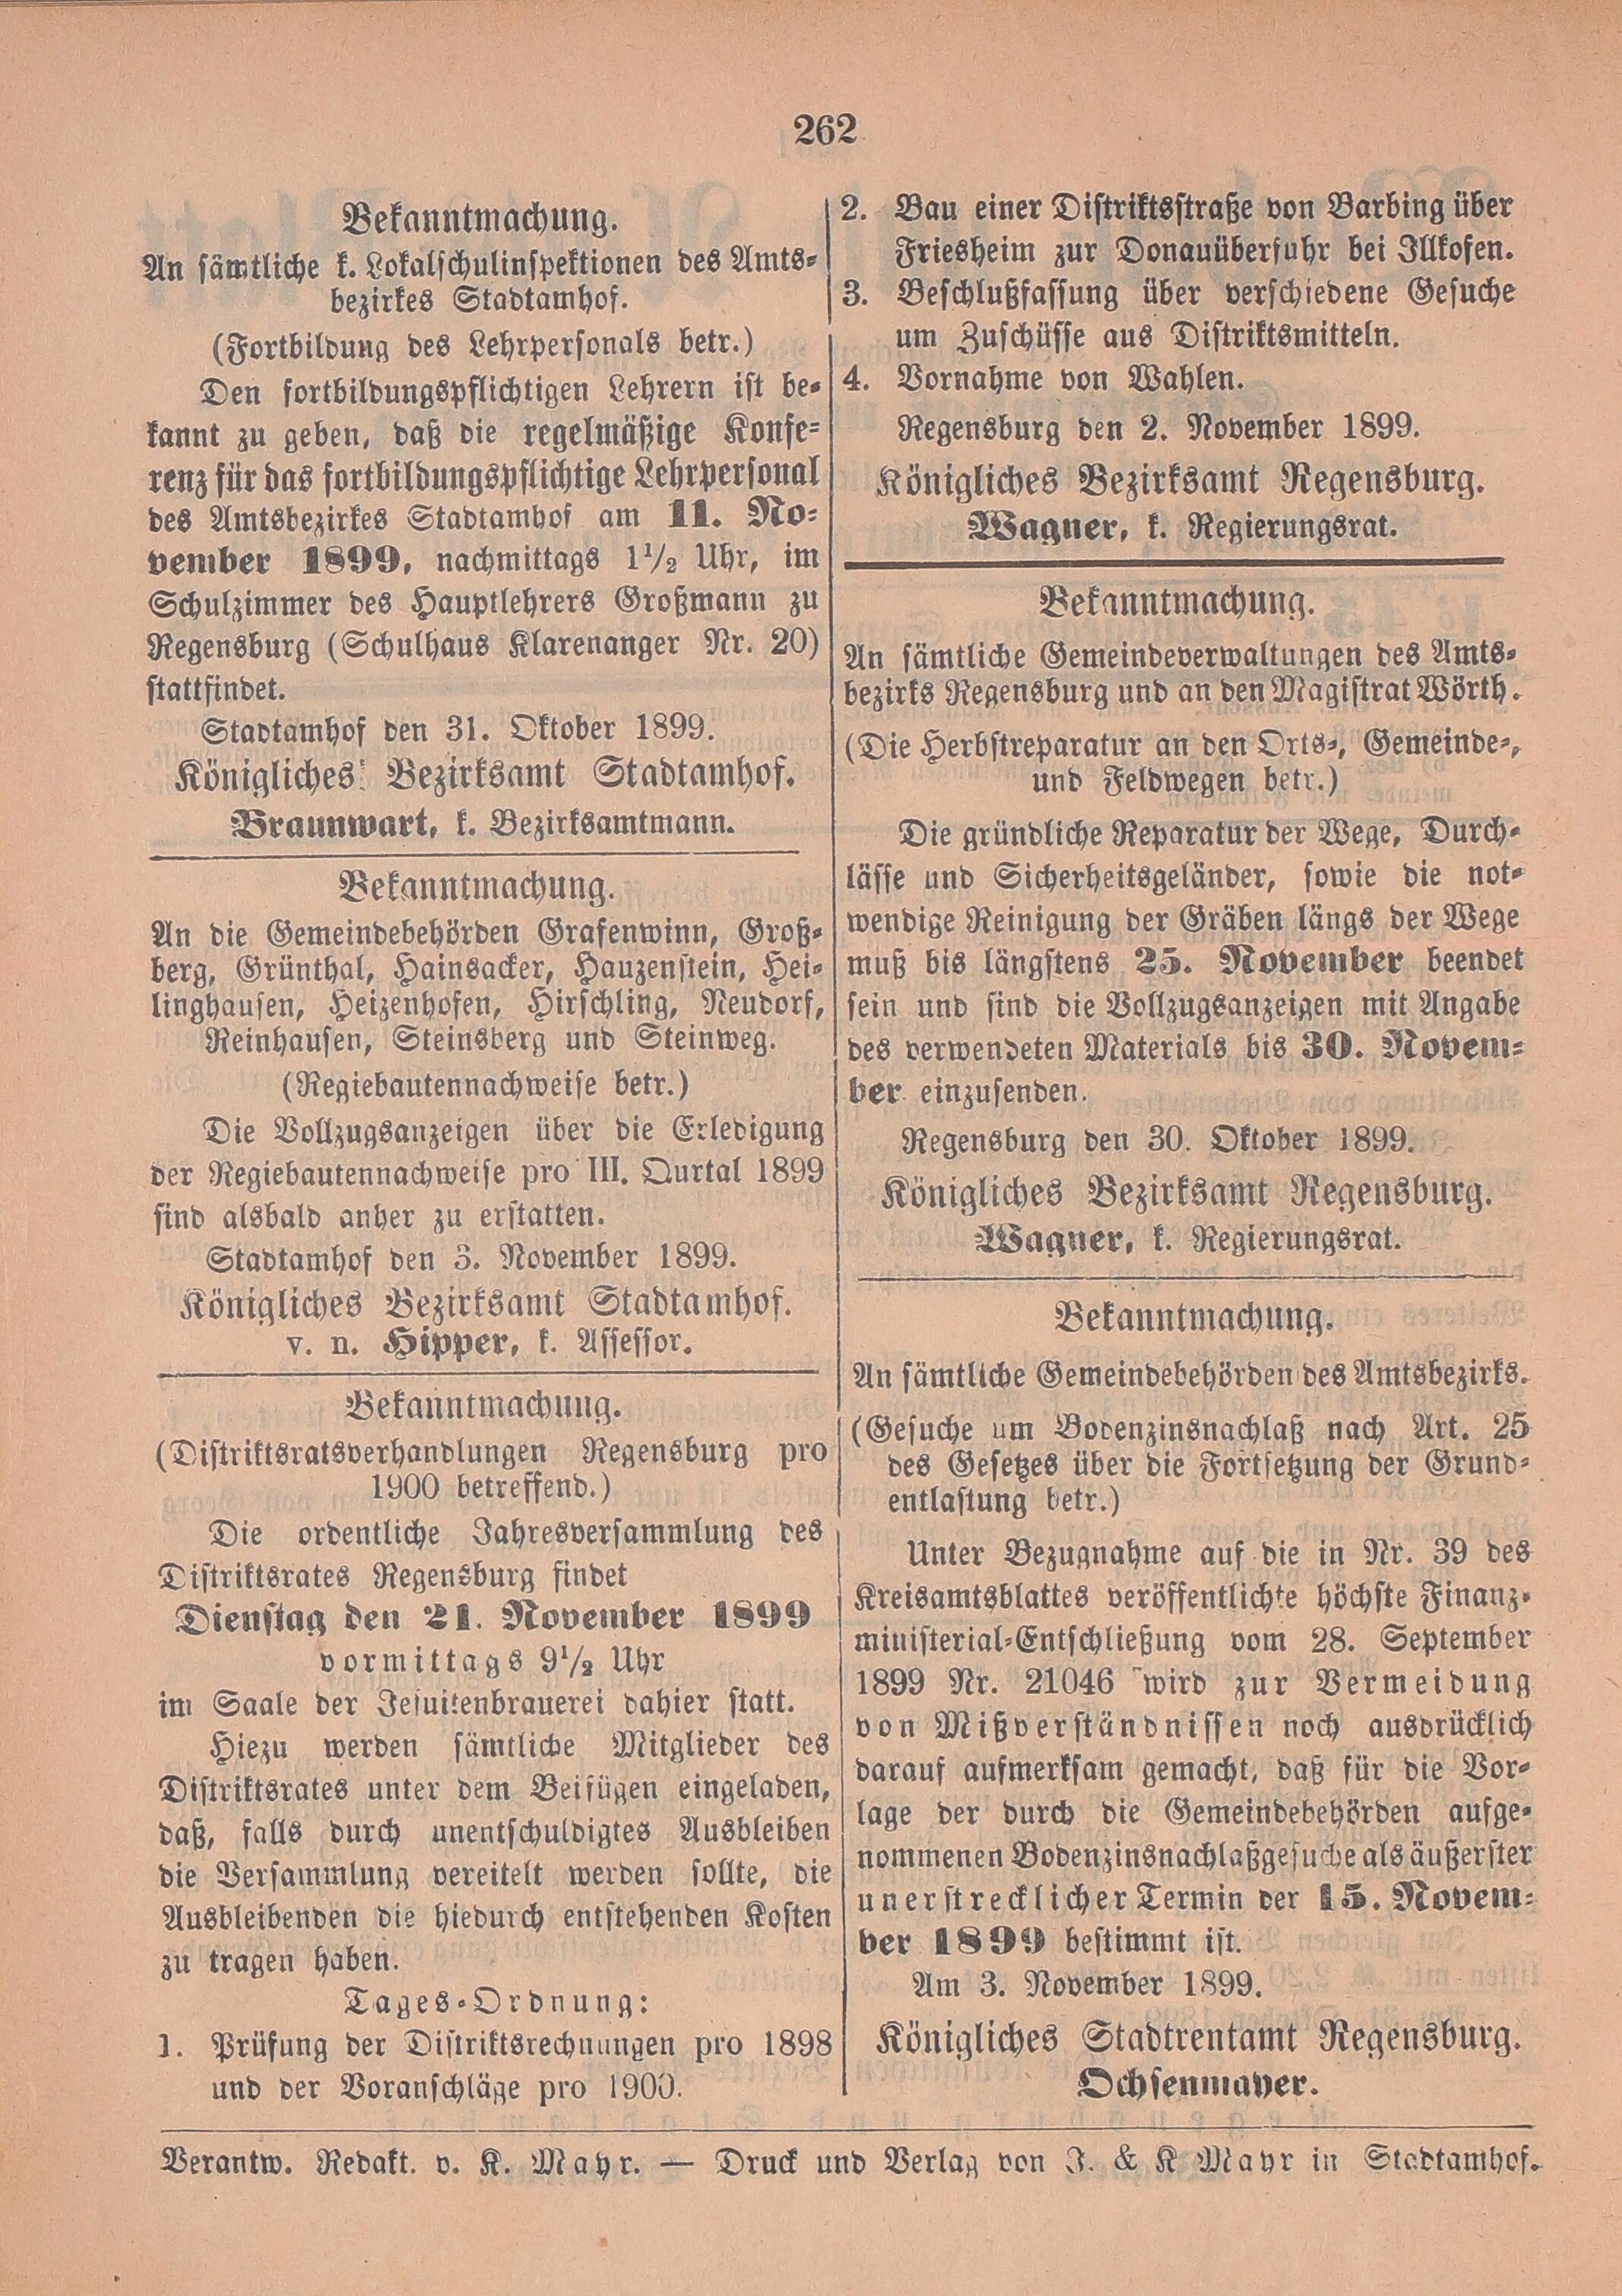 2. amtsblatt-stadtamhof-regensburg-1899-11-05-n45_2750